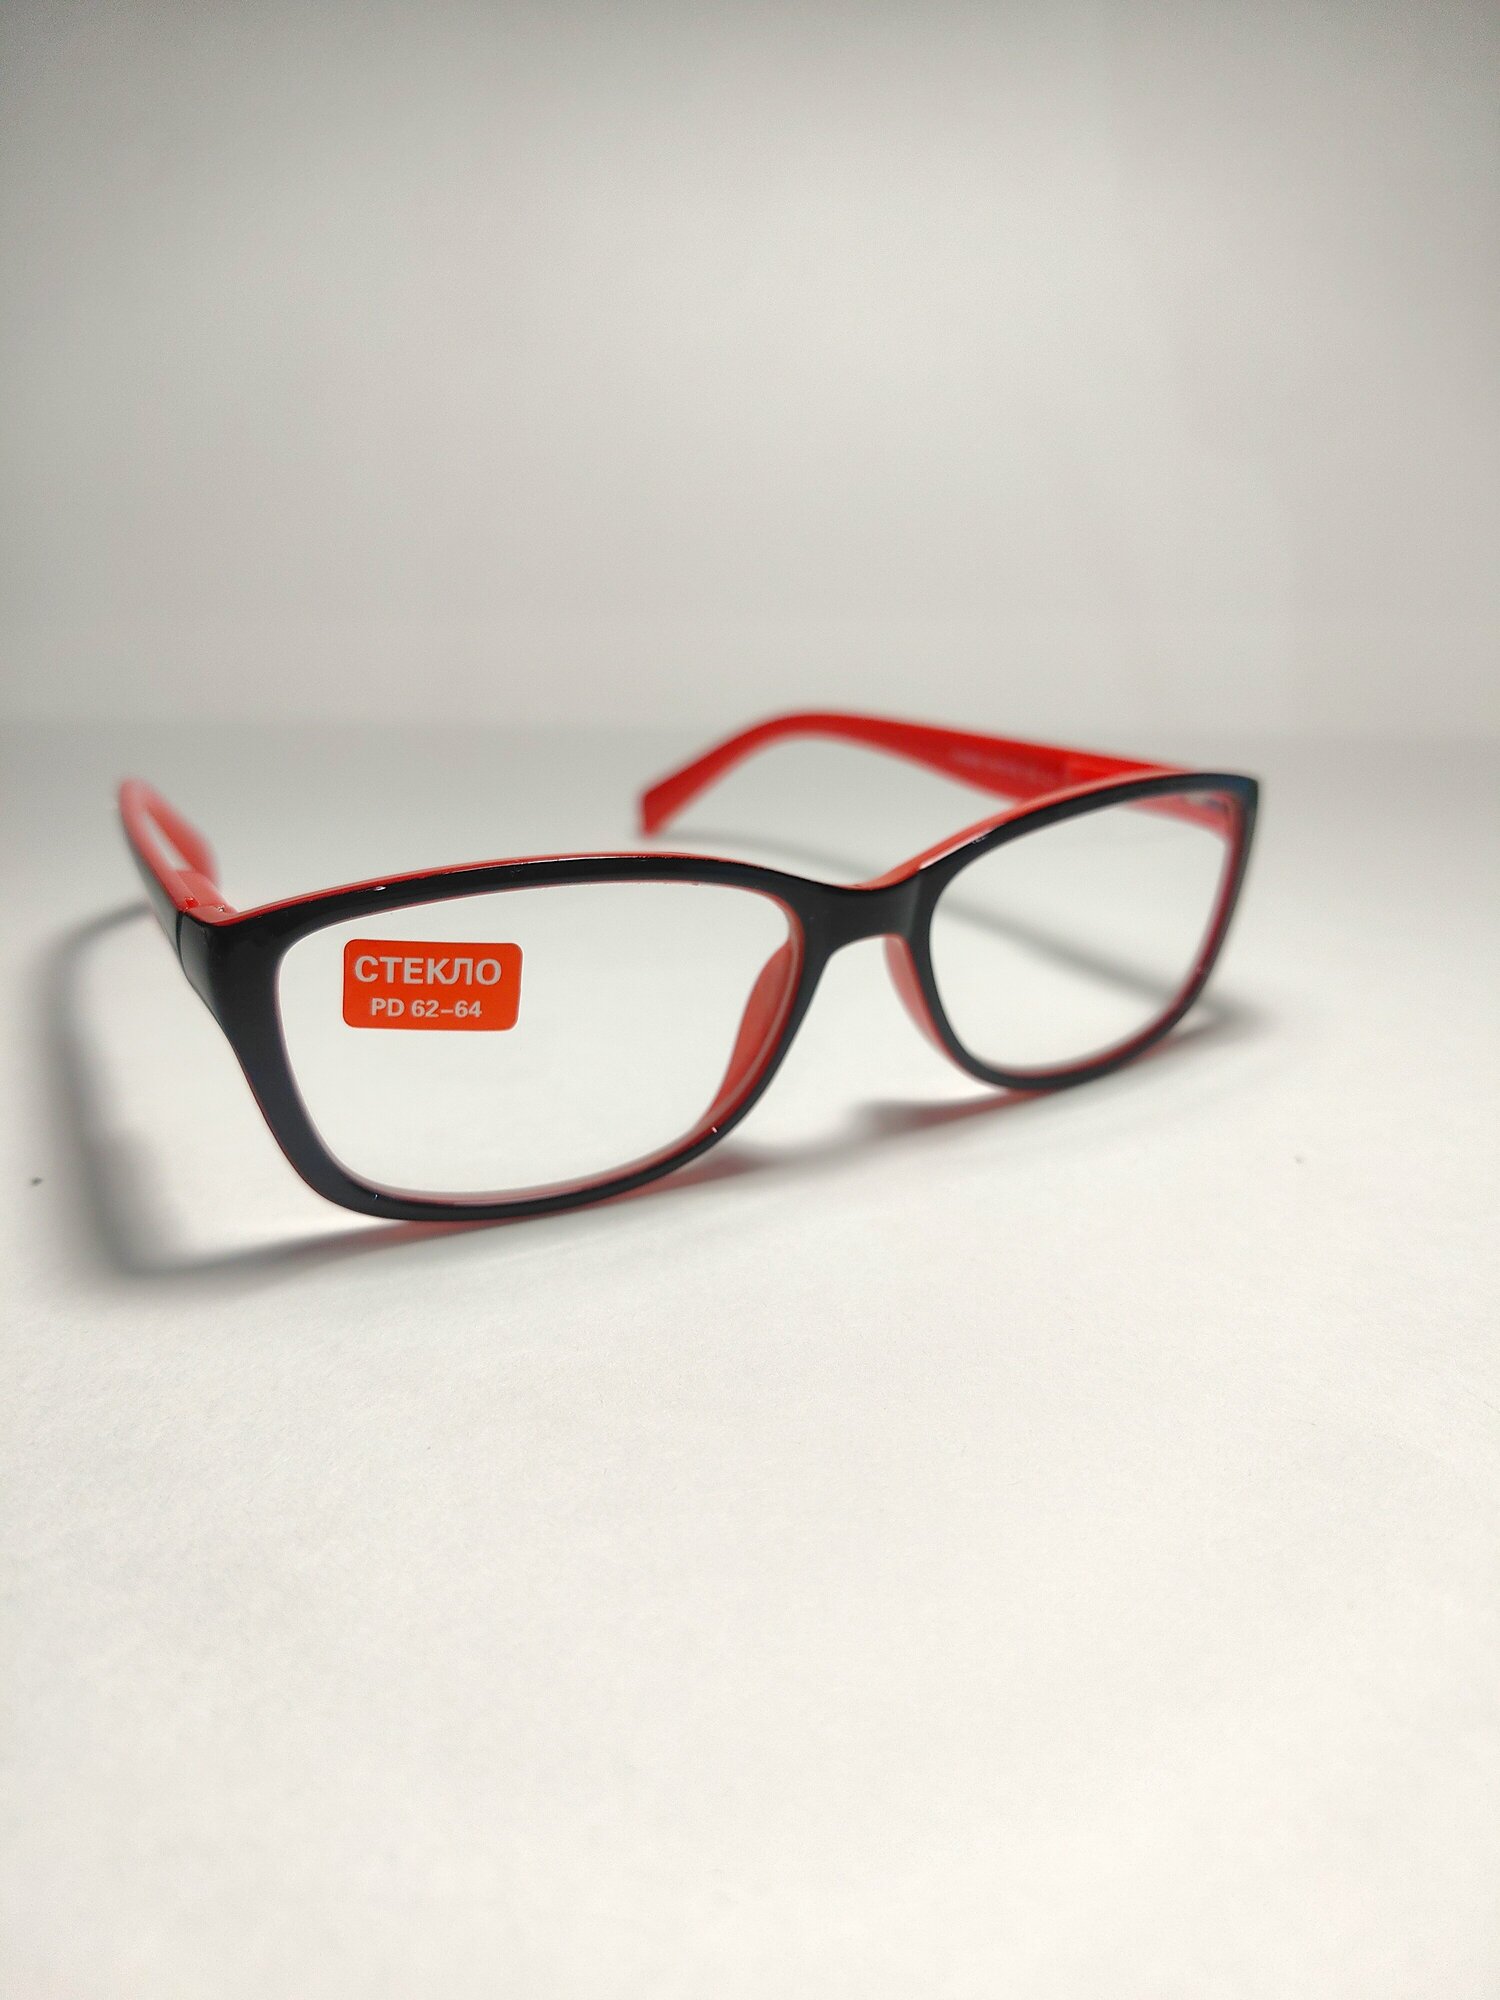 Очки для чтения (линзы стекло) +2,50/ корригирующие очки/ очки для зрения/ готовая оптика